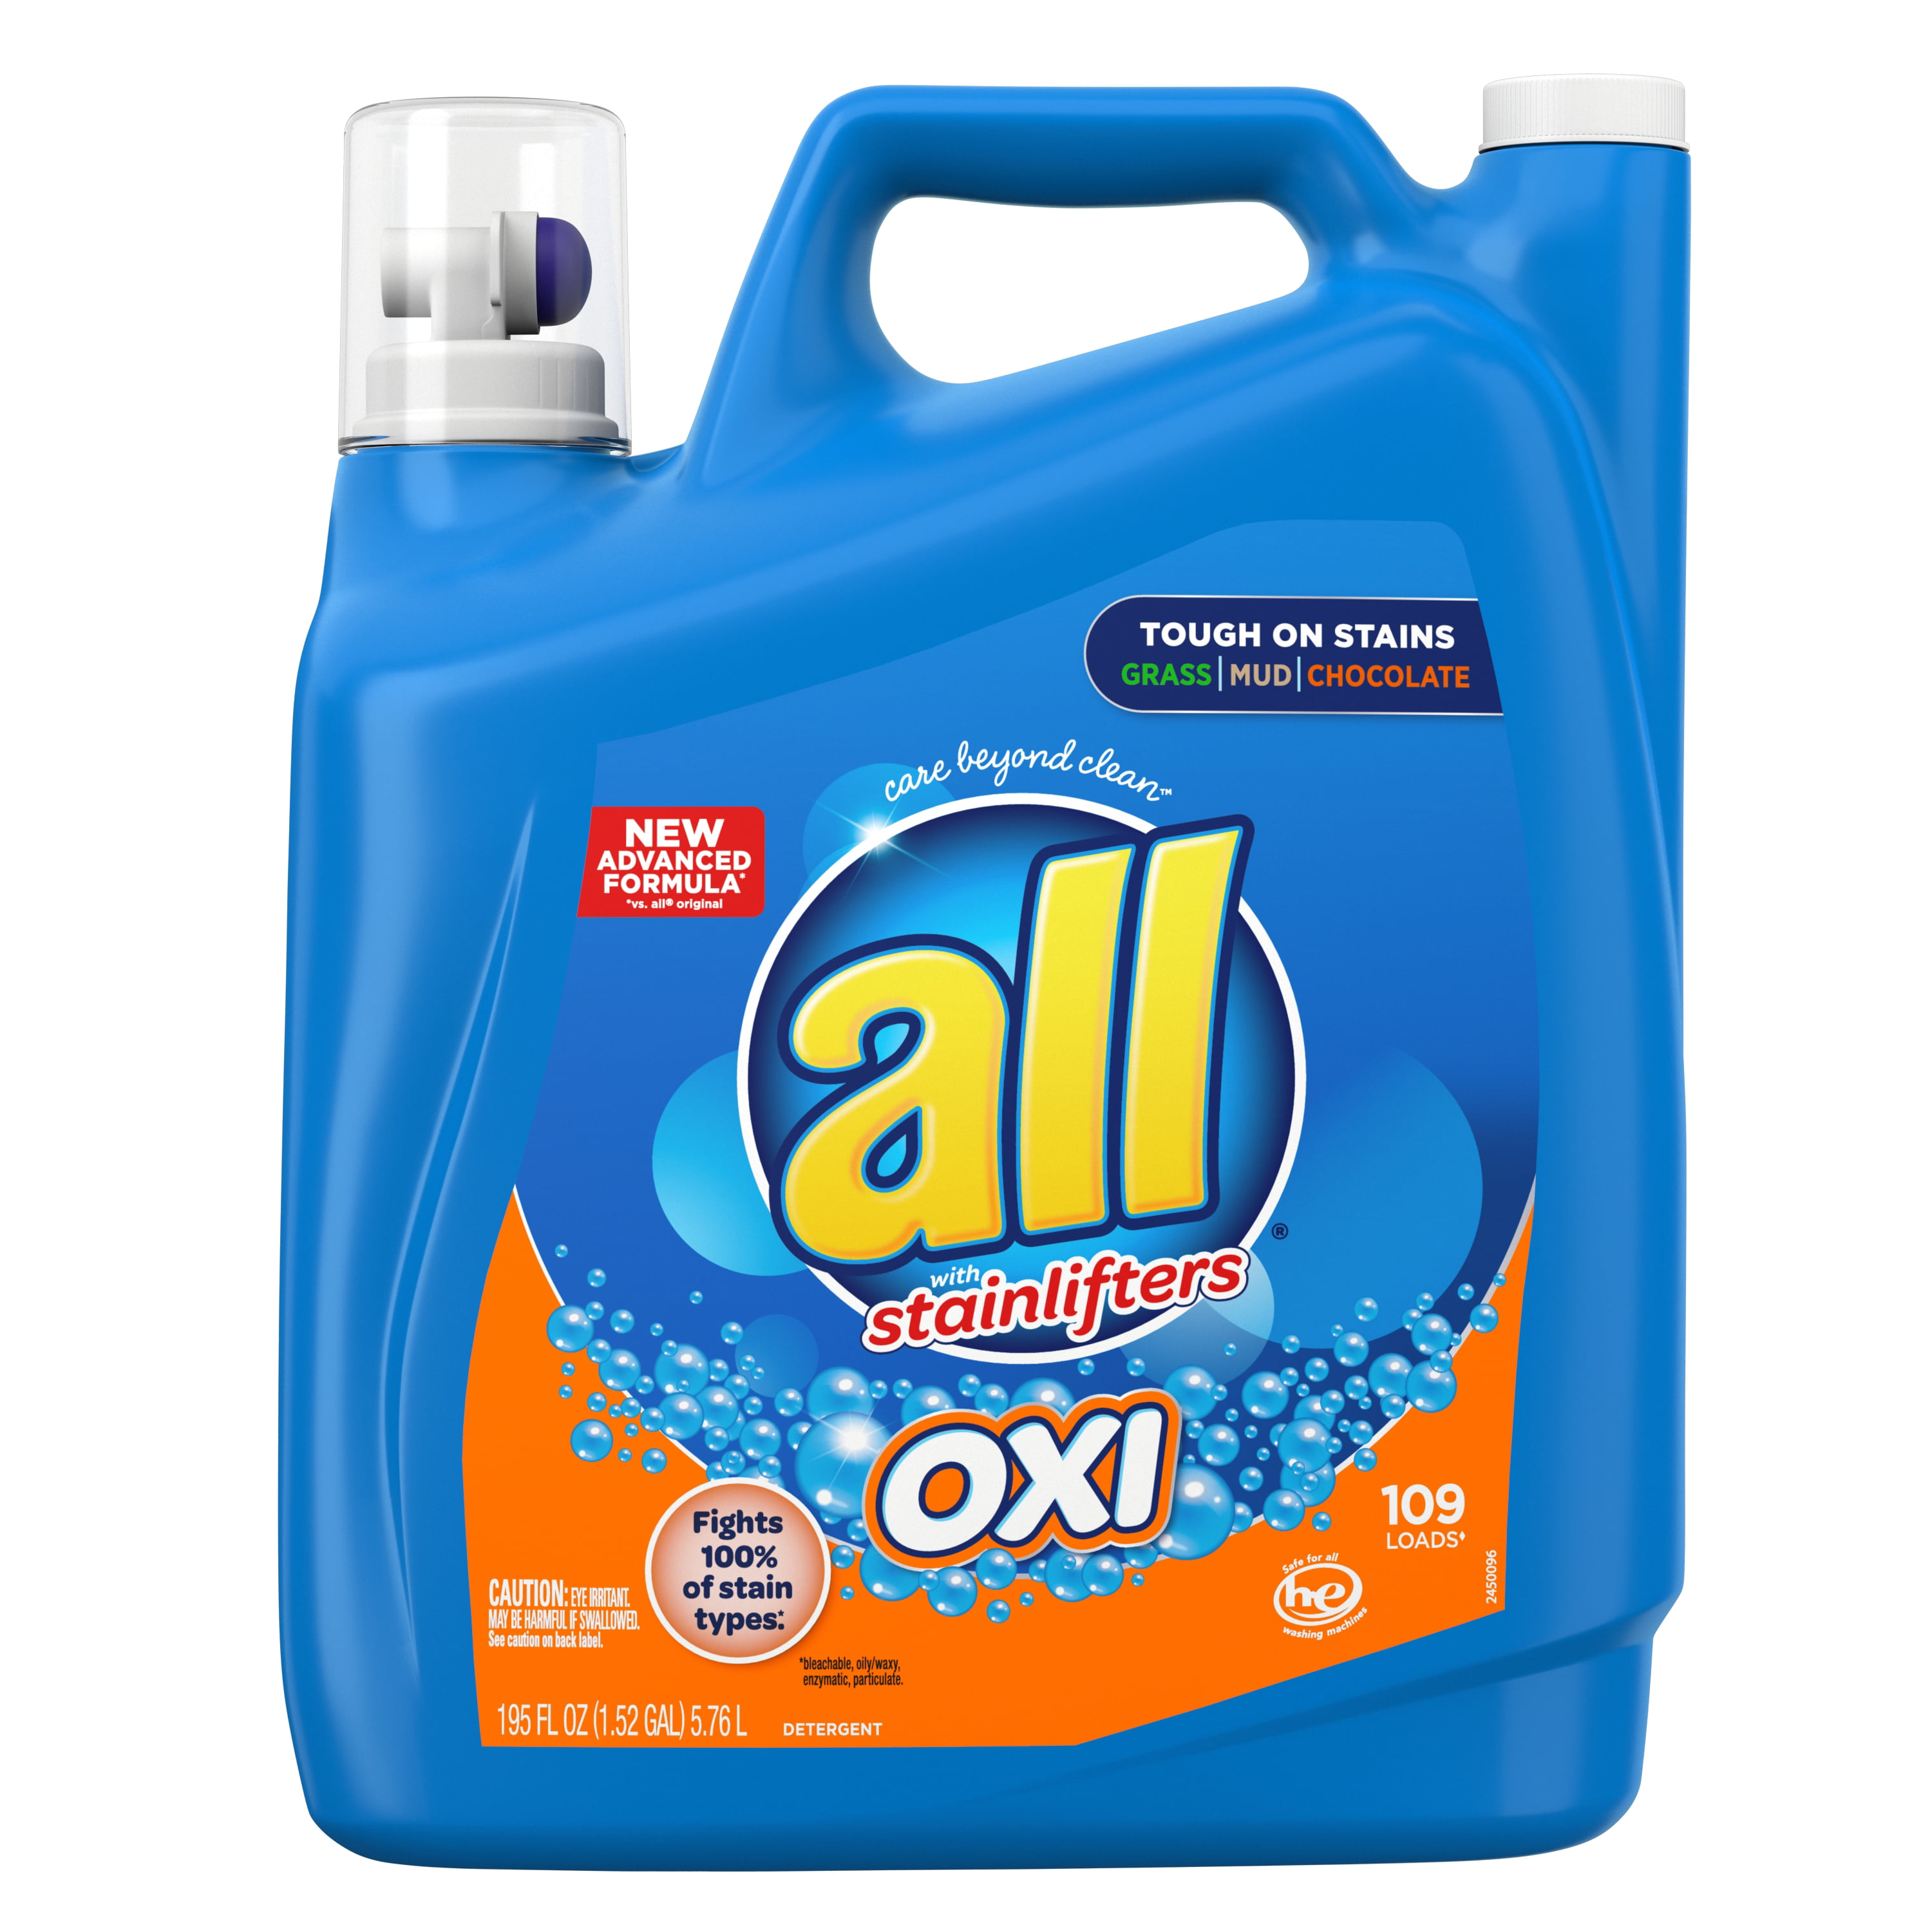 all liquid detergent